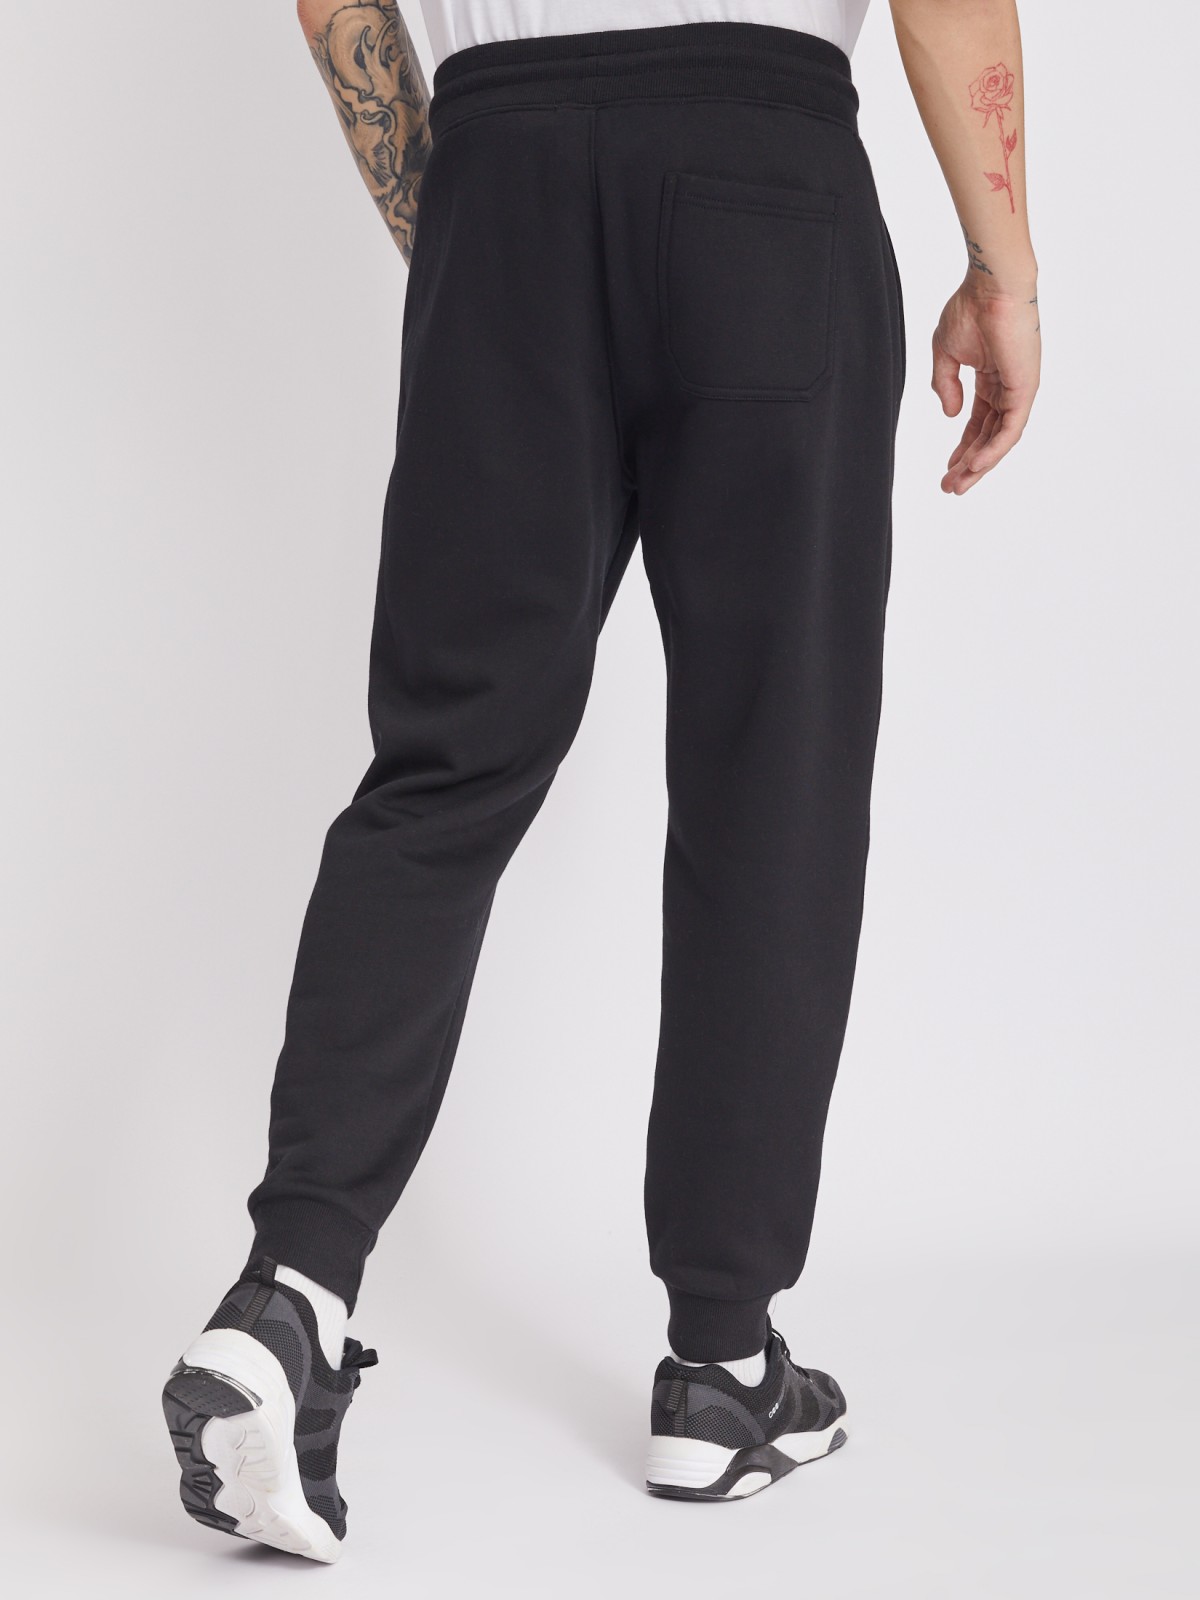 Утеплённые трикотажные брюки-джоггеры в спортивном стиле zolla 213337675022, цвет черный, размер M - фото 5